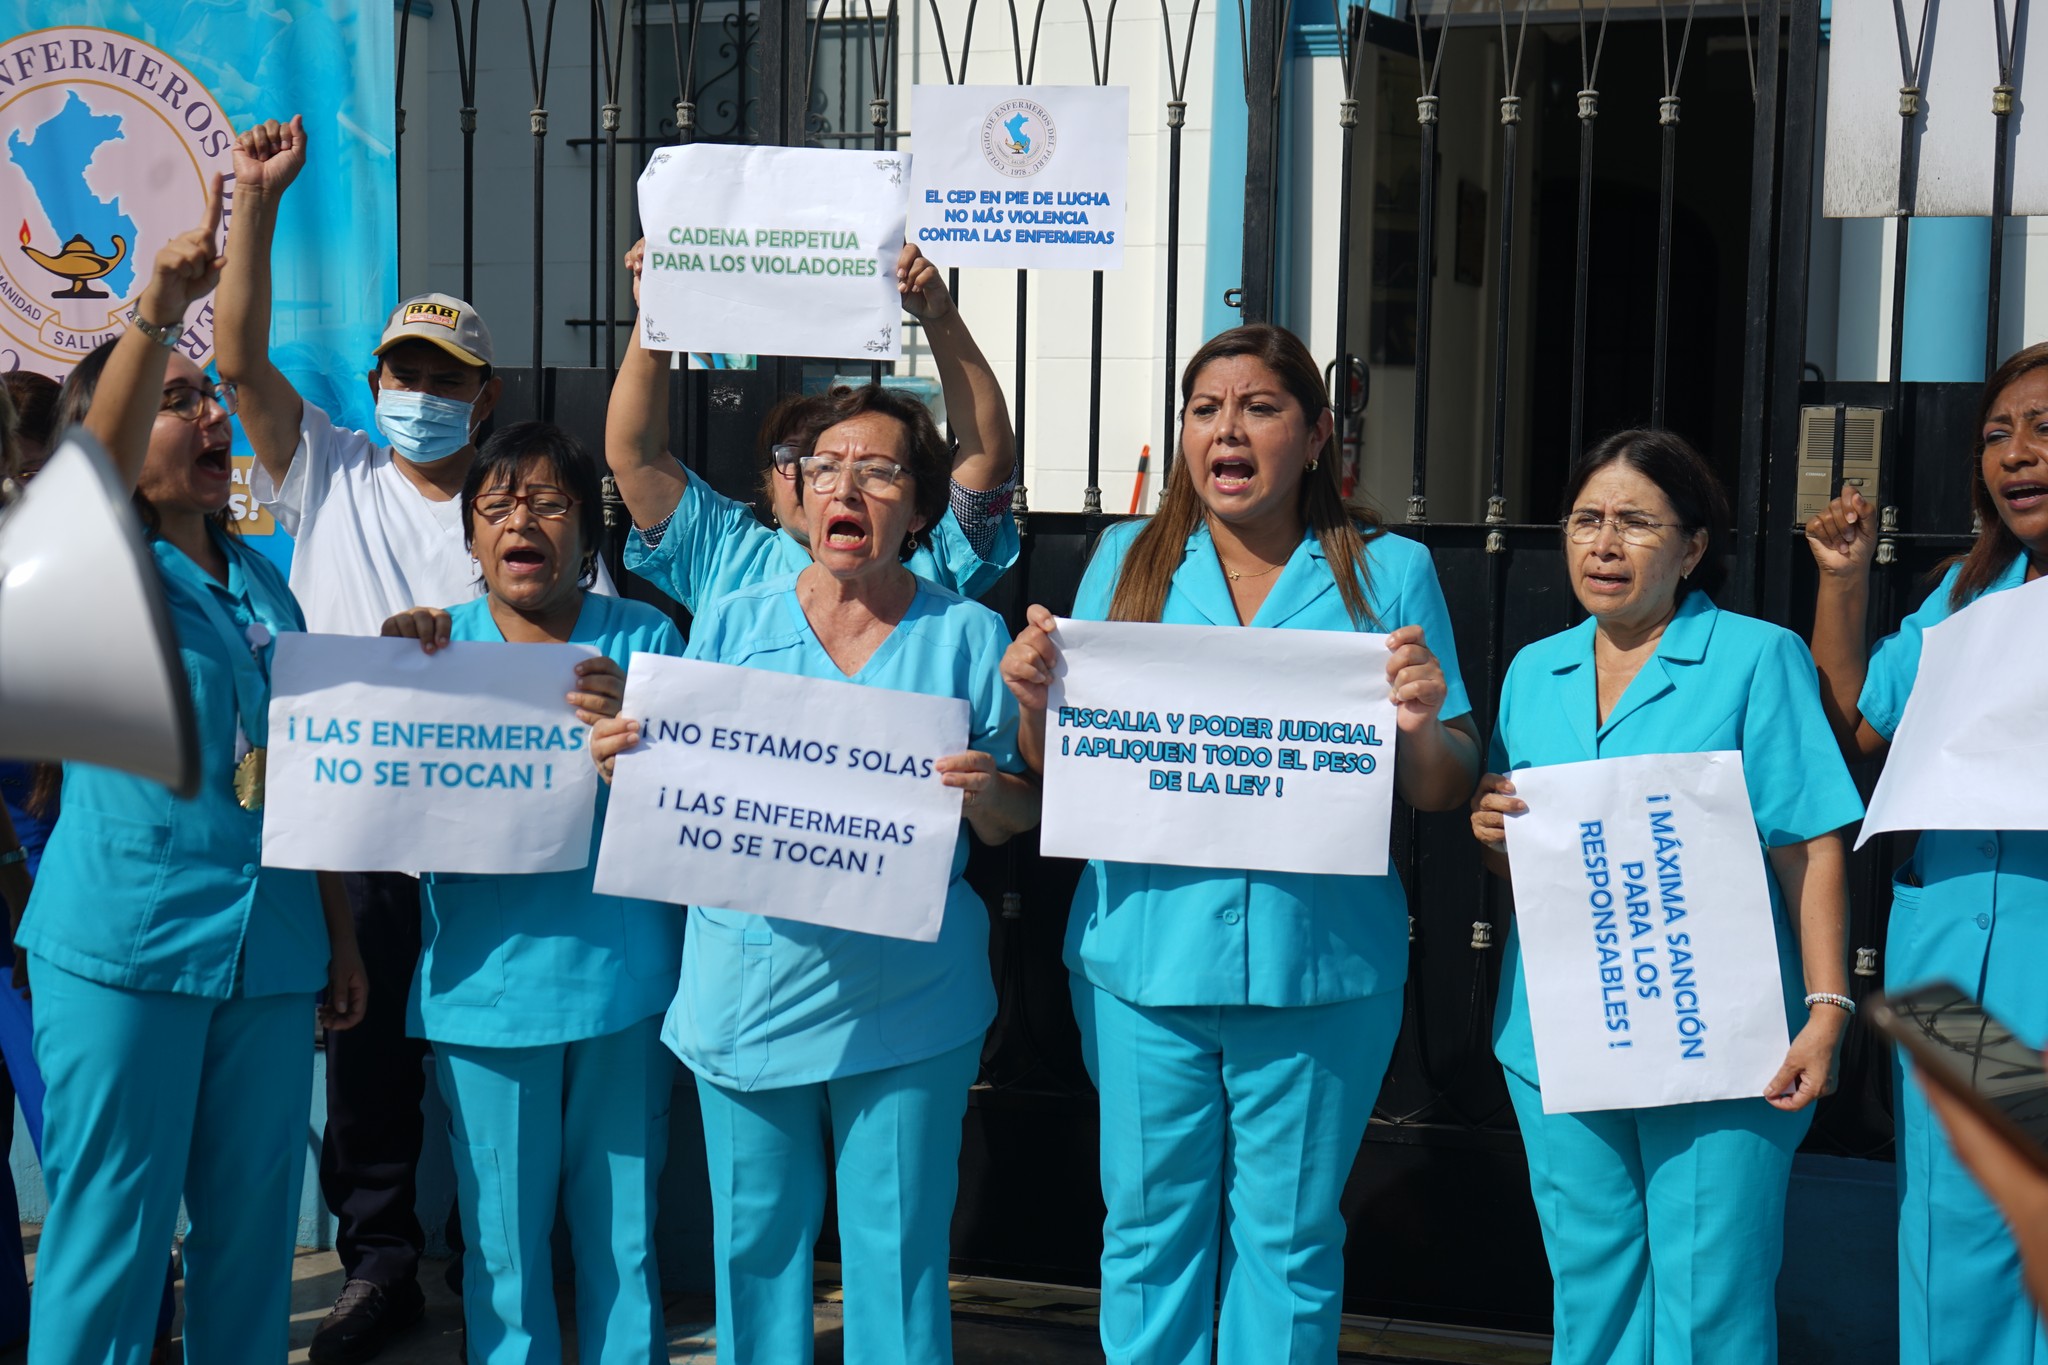 Horror en Puno: Enfermeras indignadas por médico legista que reportó como ‘lesiones leves’ a víctima de violación grupal